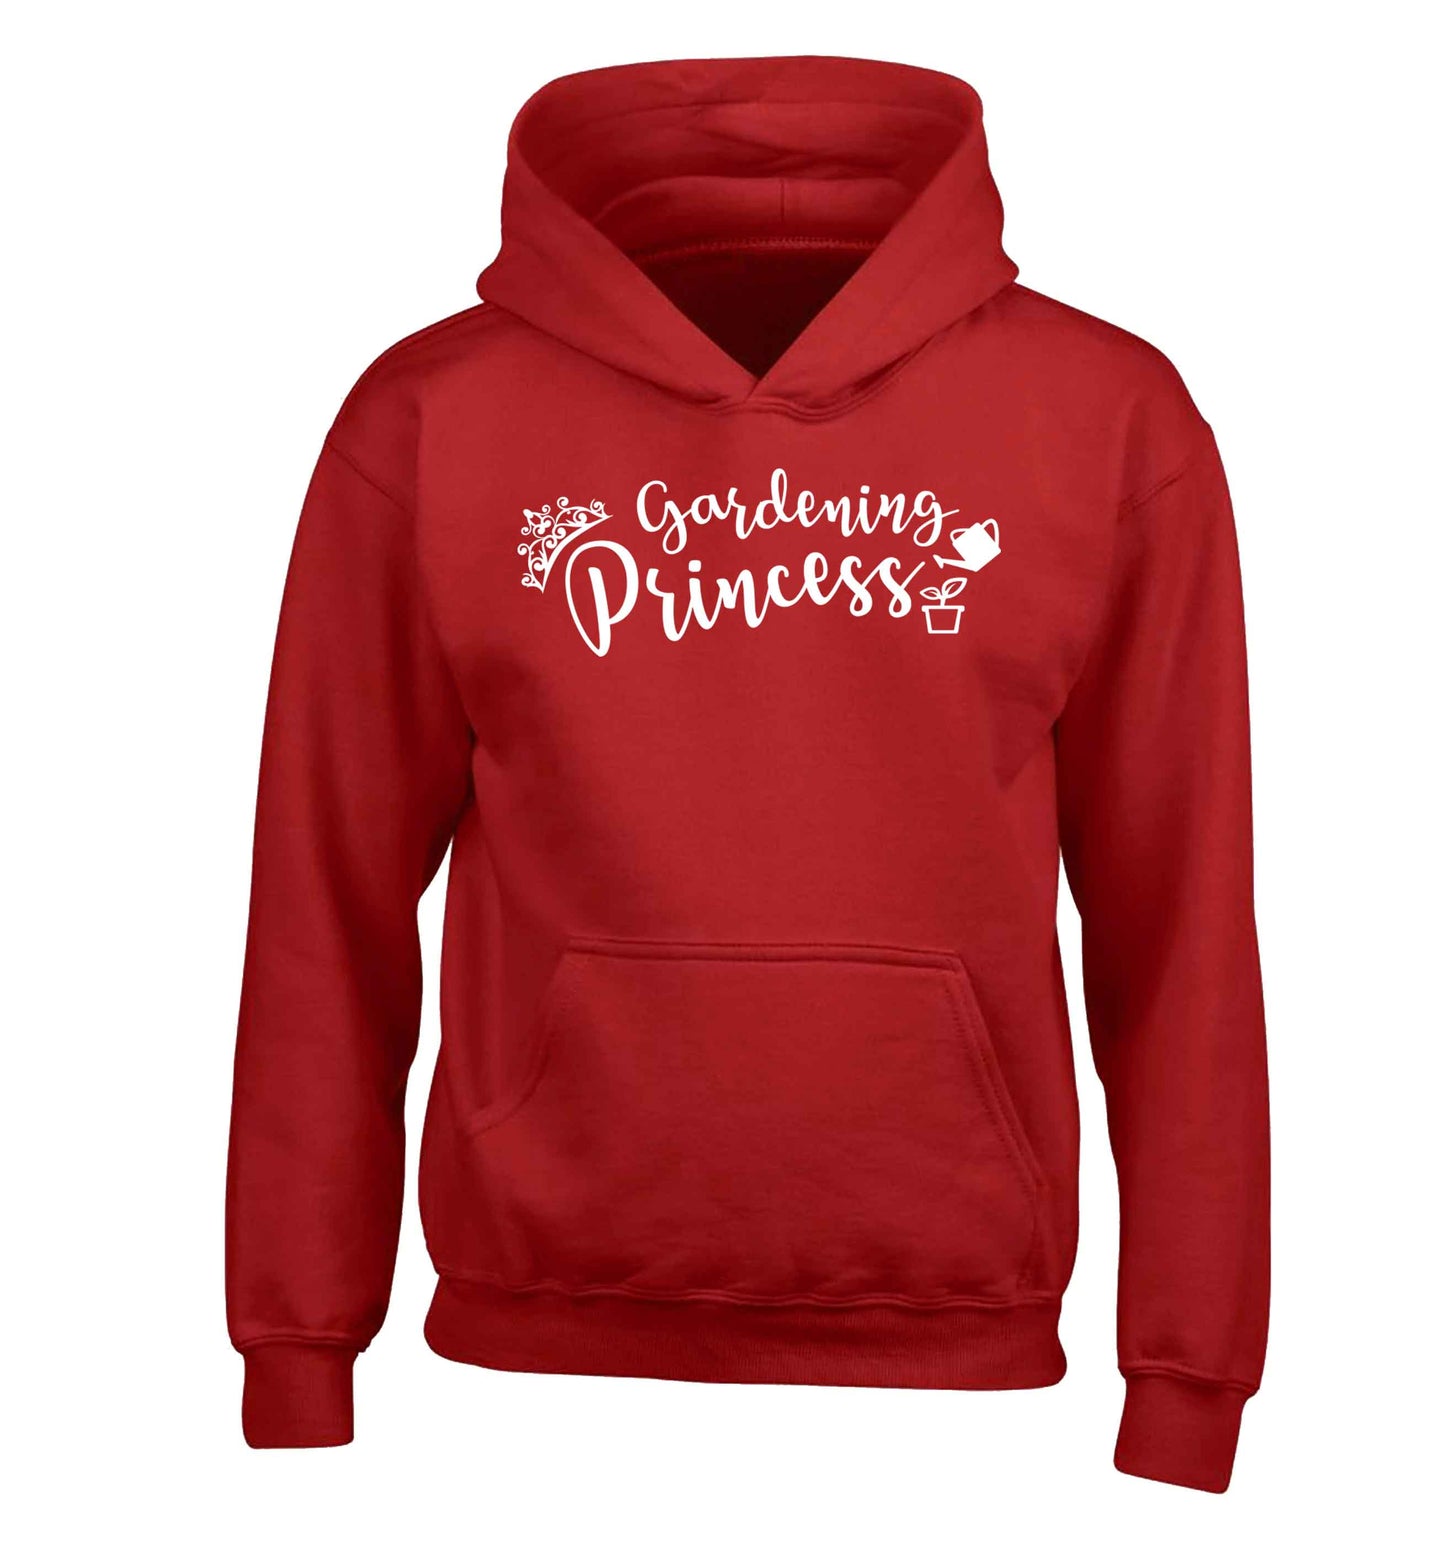 Gardening princess children's red hoodie 12-13 Years